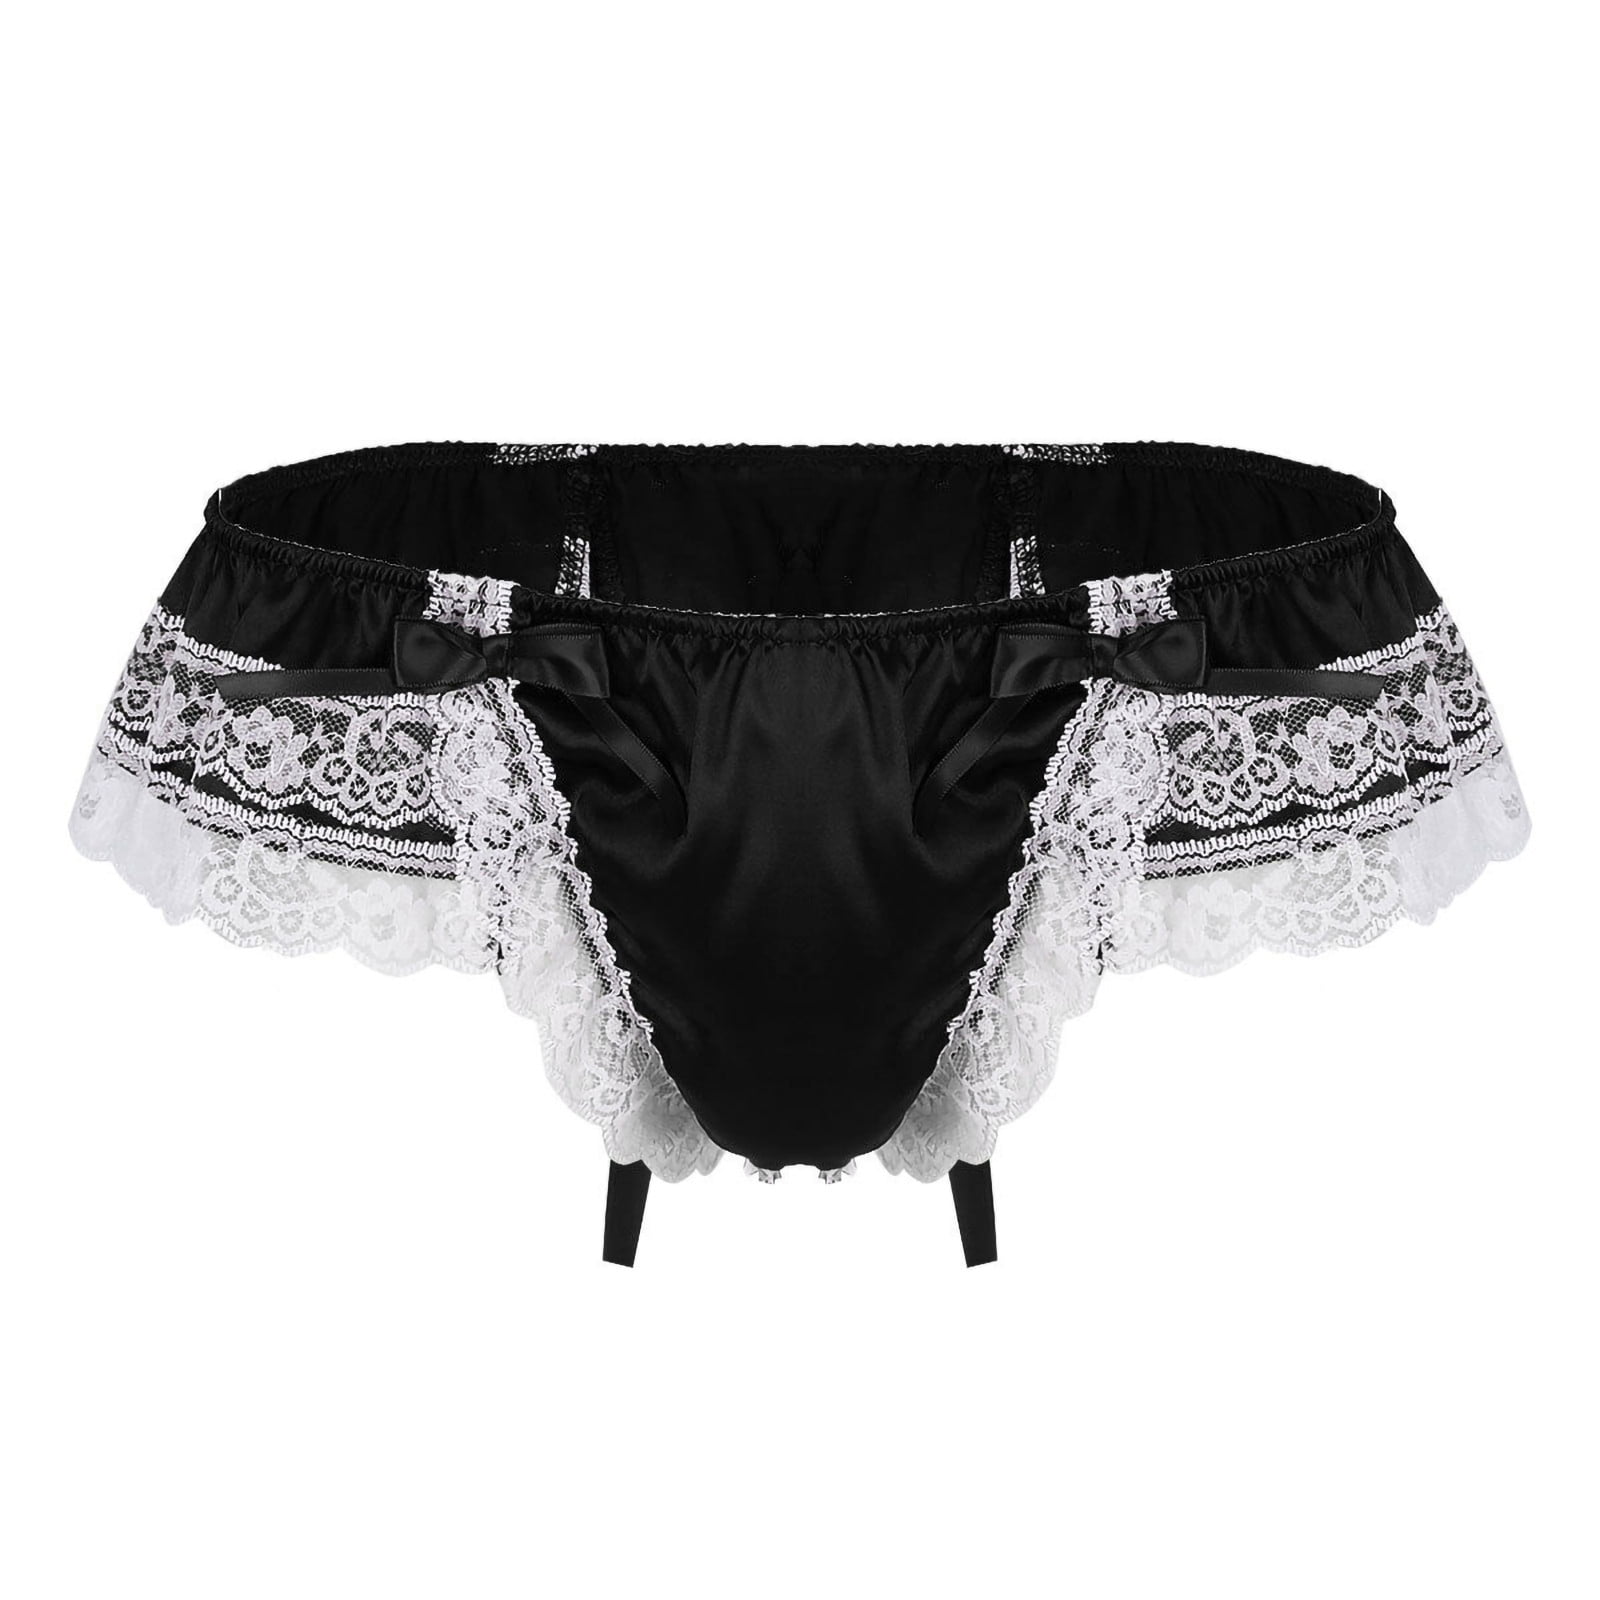 Sissy Men Sheer Lace Ruffled See Throug Briefs Panties Skirt Knickers Underwear 